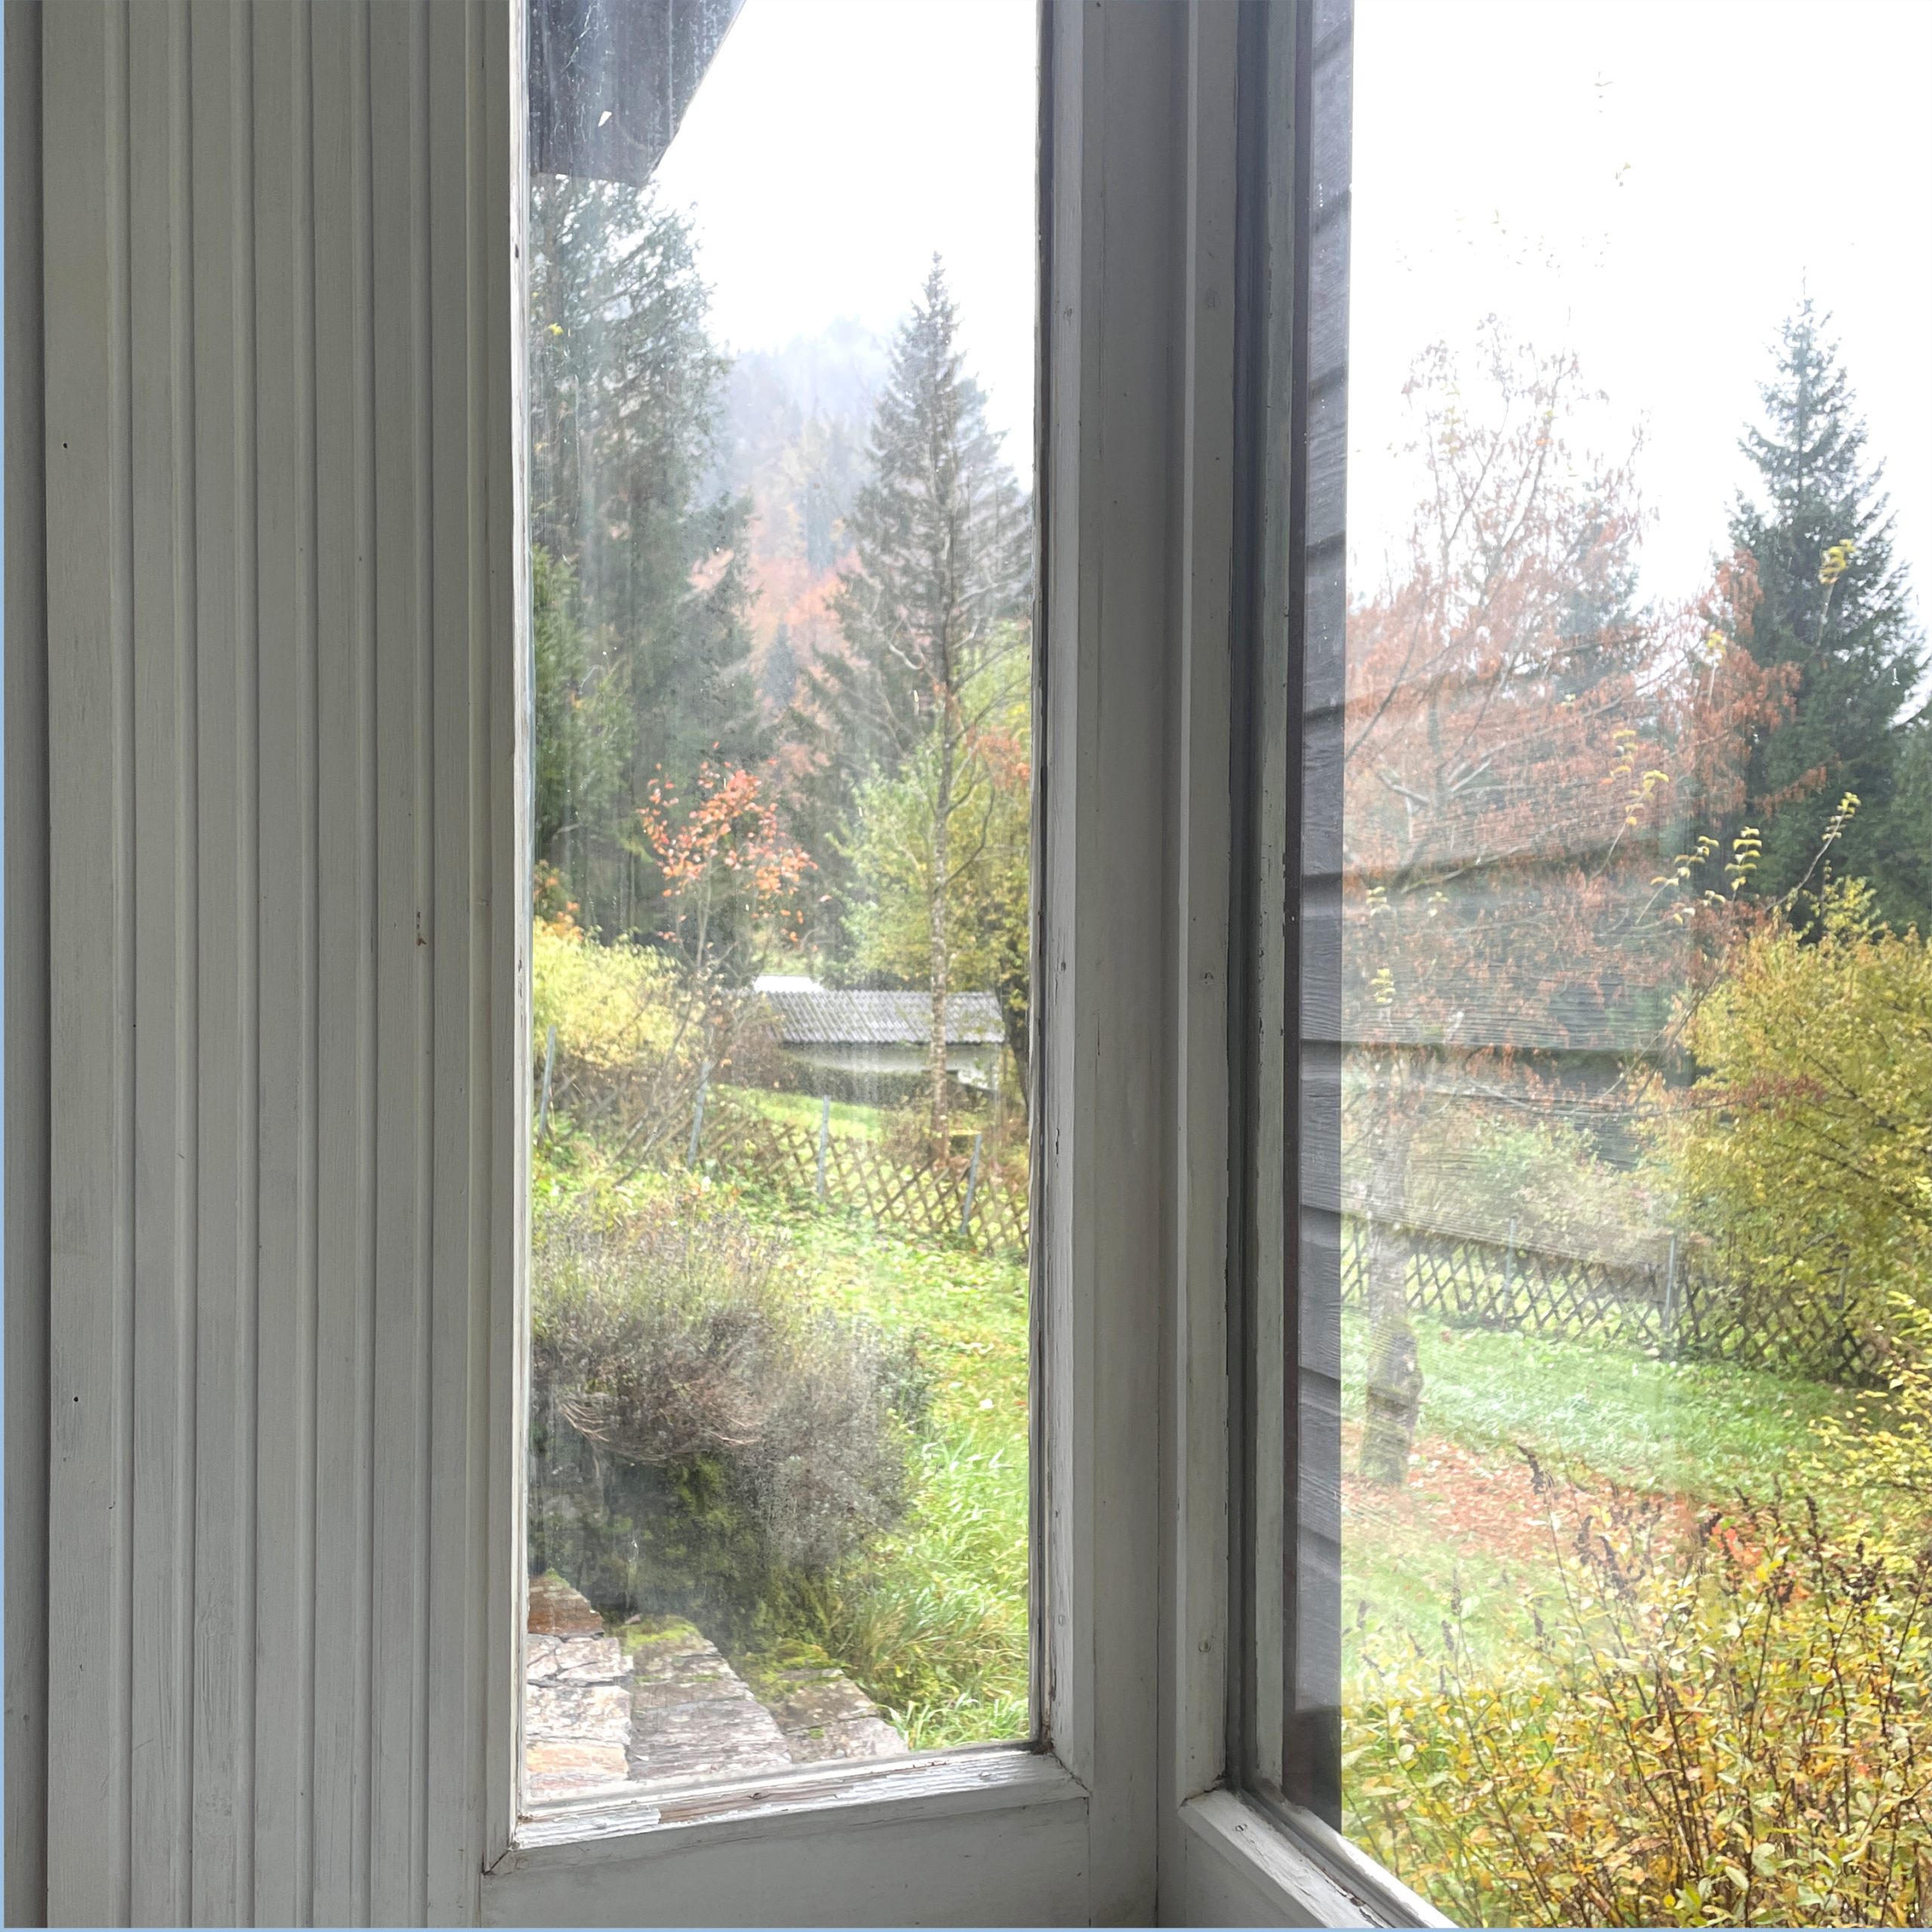 Sichtschutzfolie Fenster - 2 Anwendungsbeispiele - Musterladen